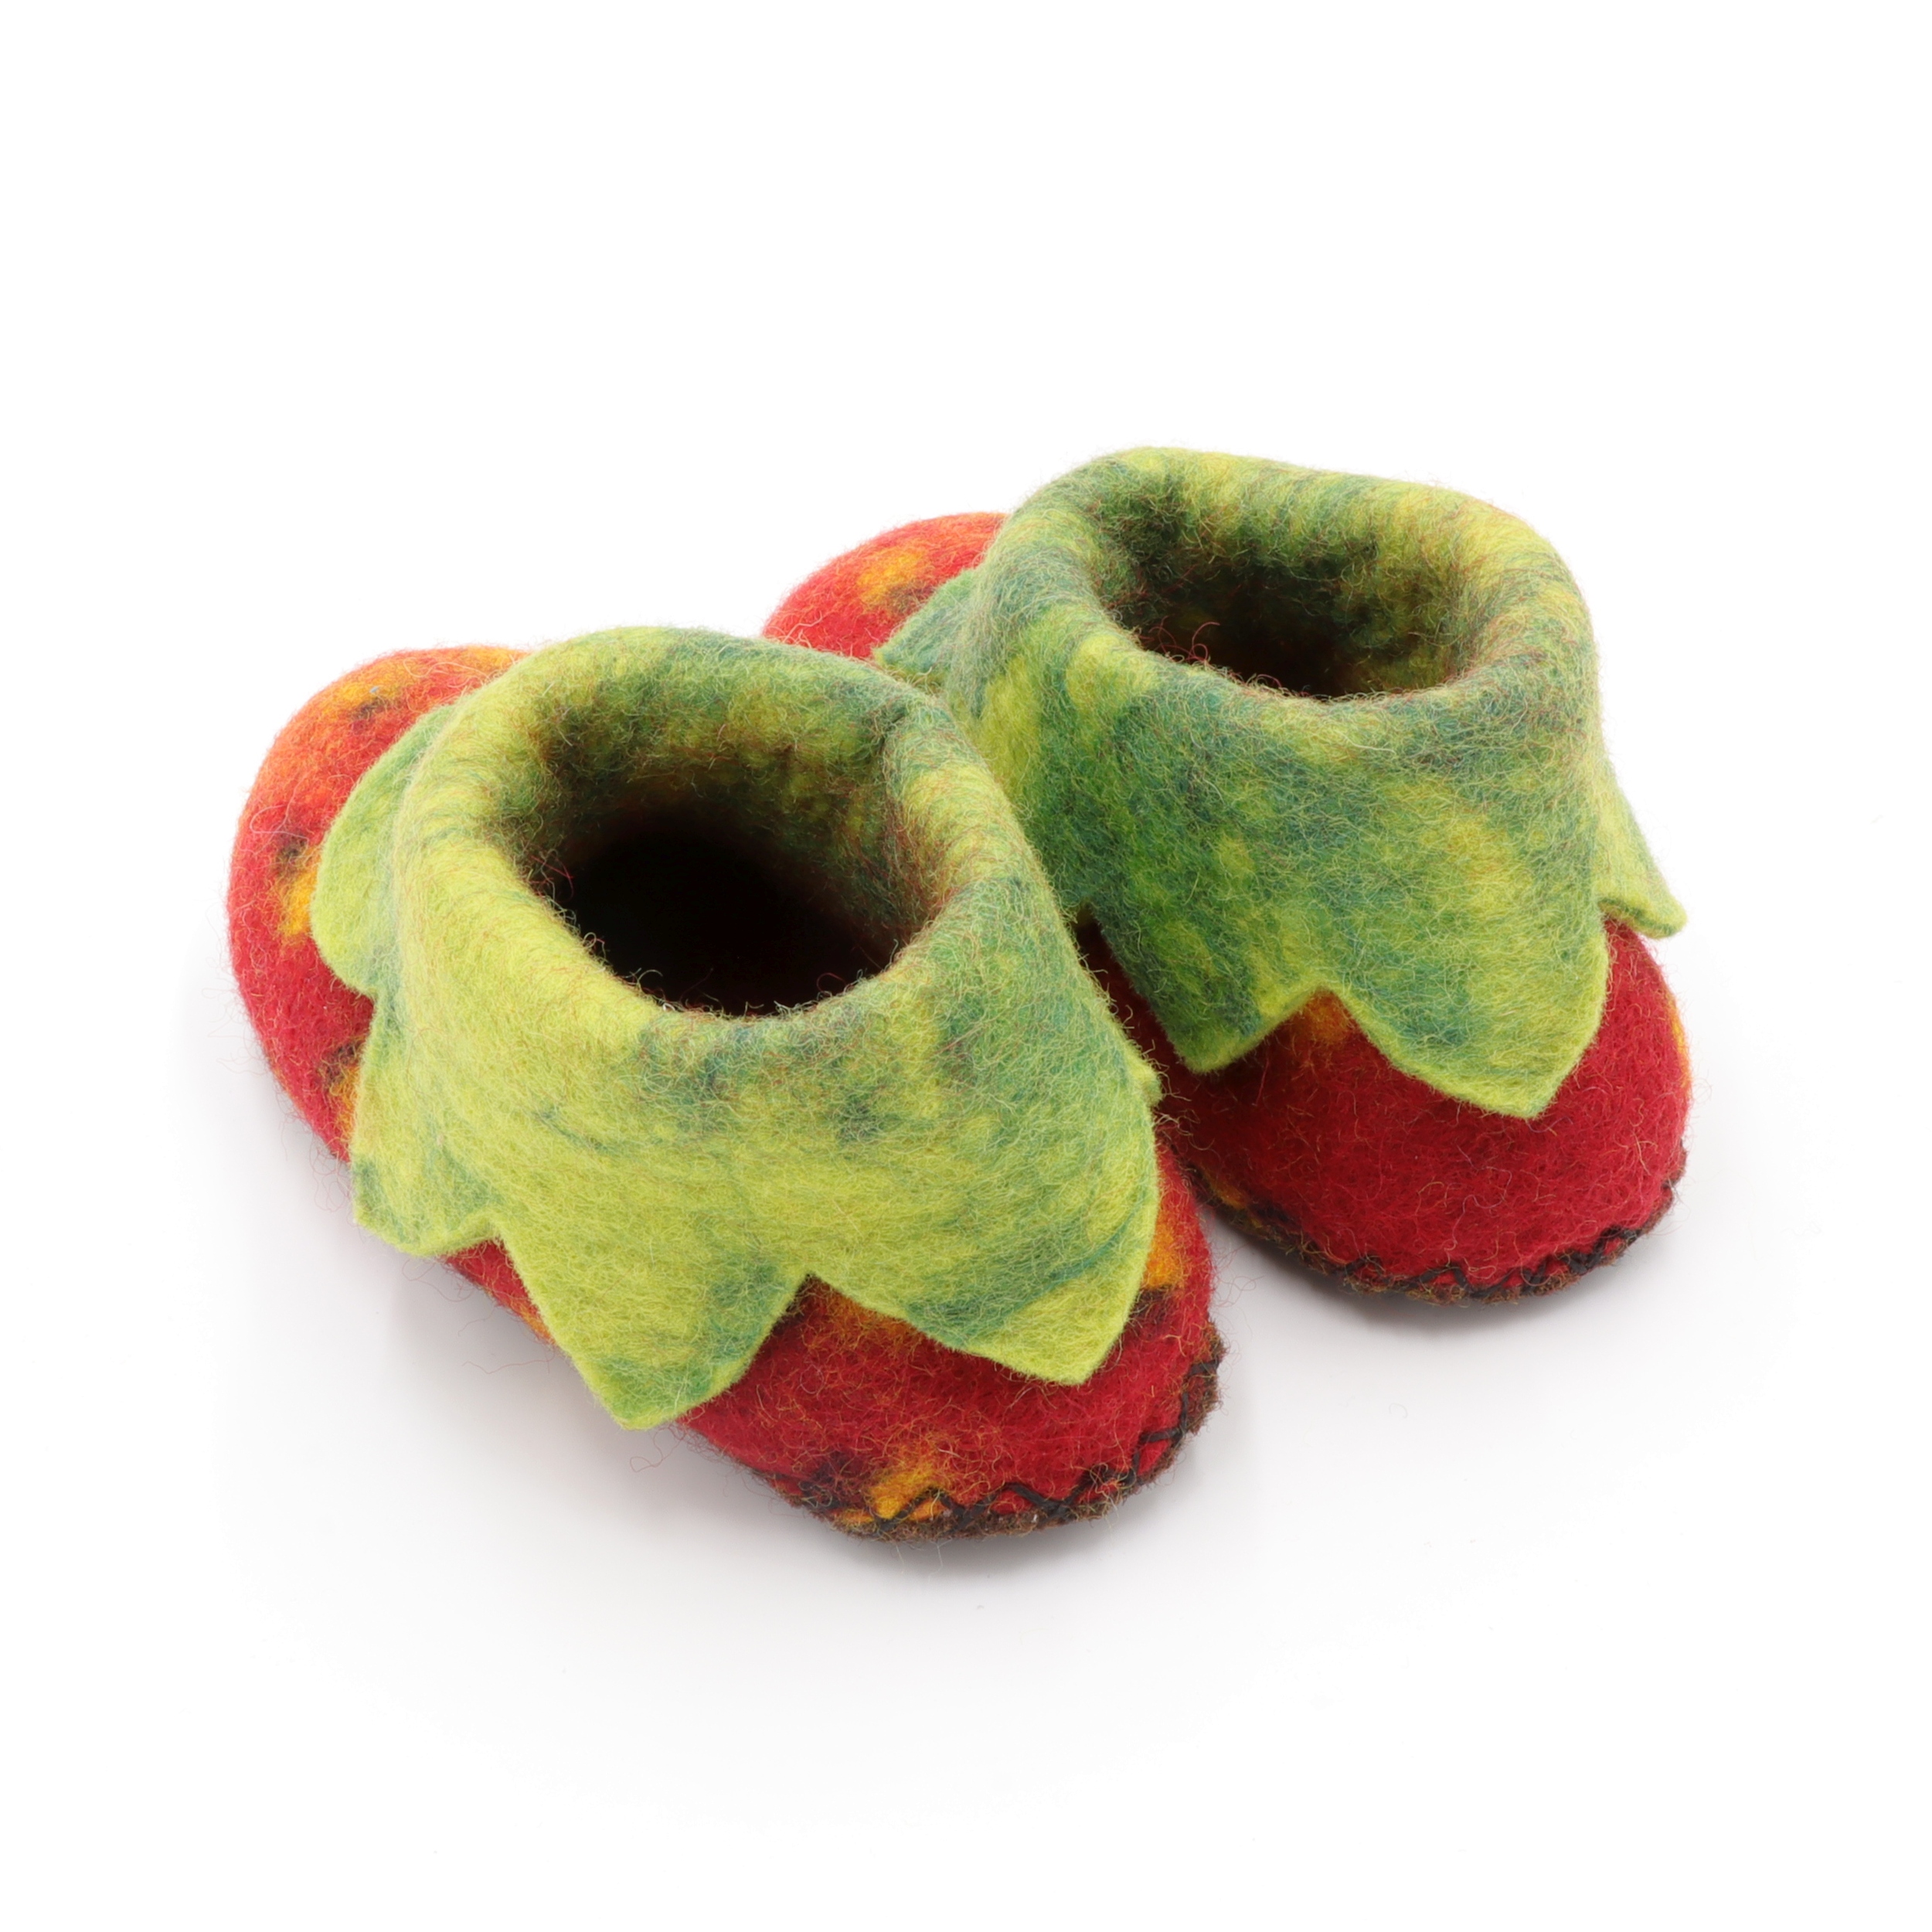 Schuhe aus Filz für Kinder - Die Rote Erdbeere - rutschfeste Sohle aus Teppichstoff